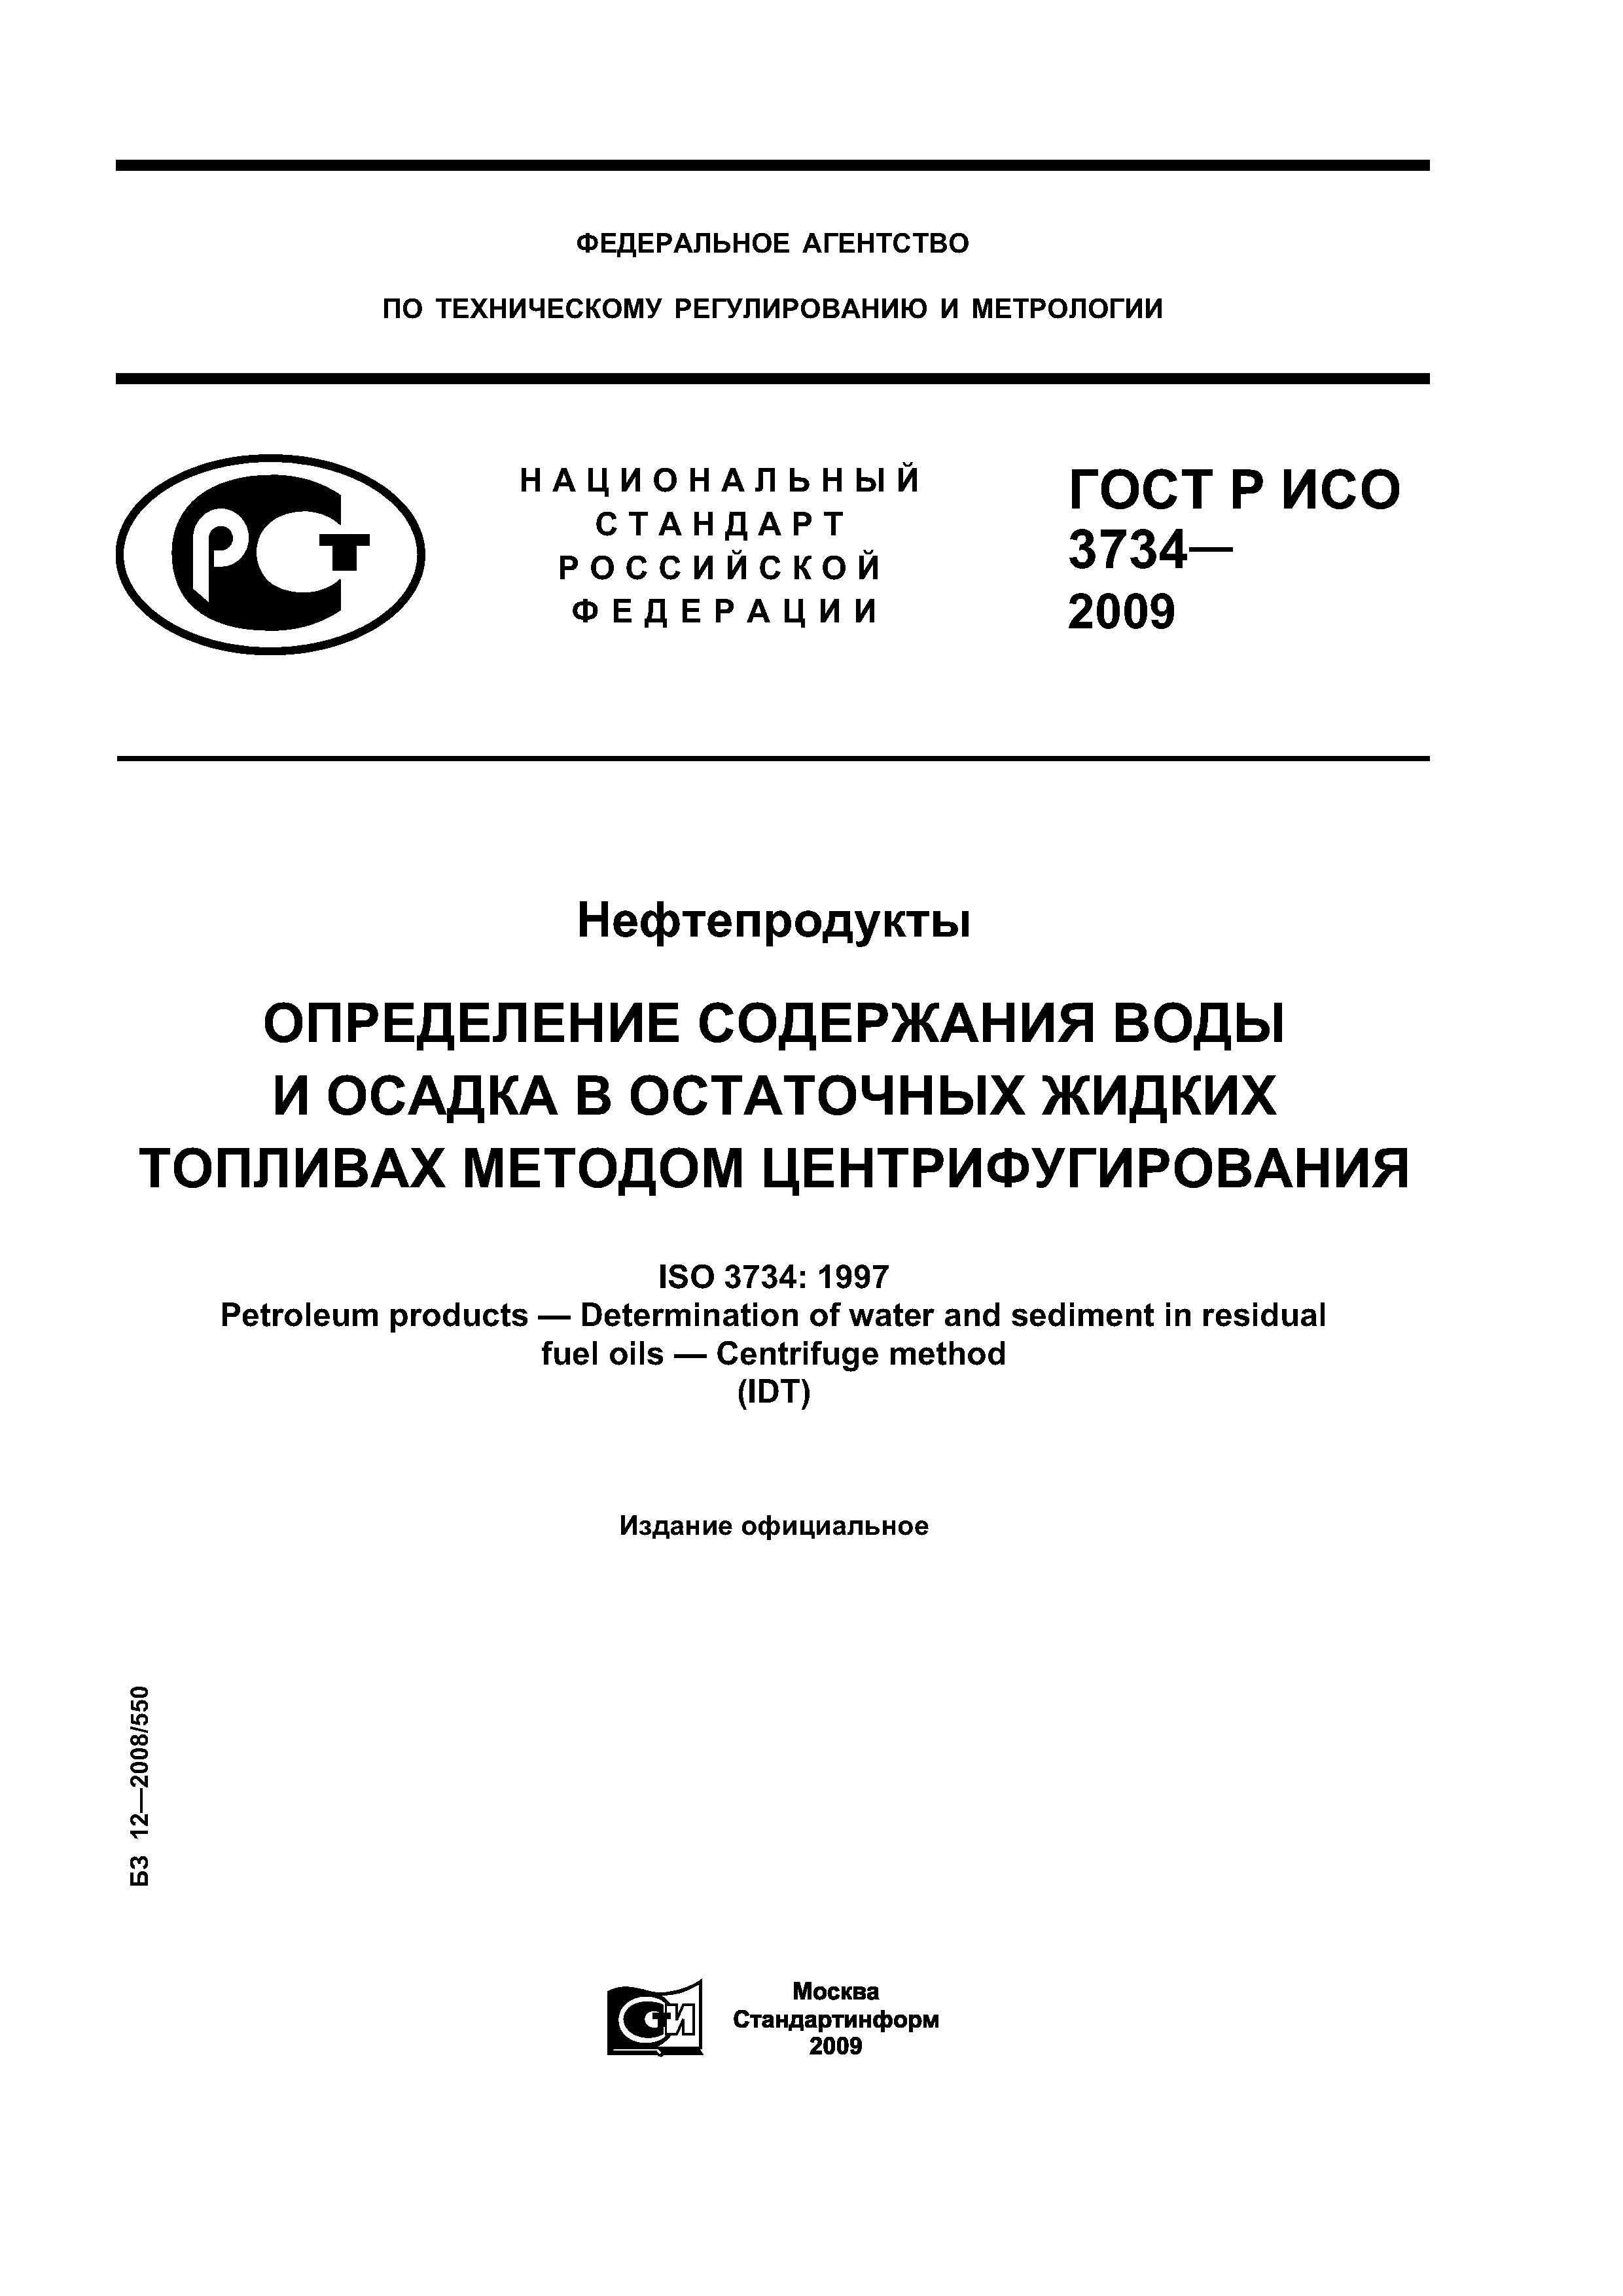 ГОСТ Р ИСО 3734-2009